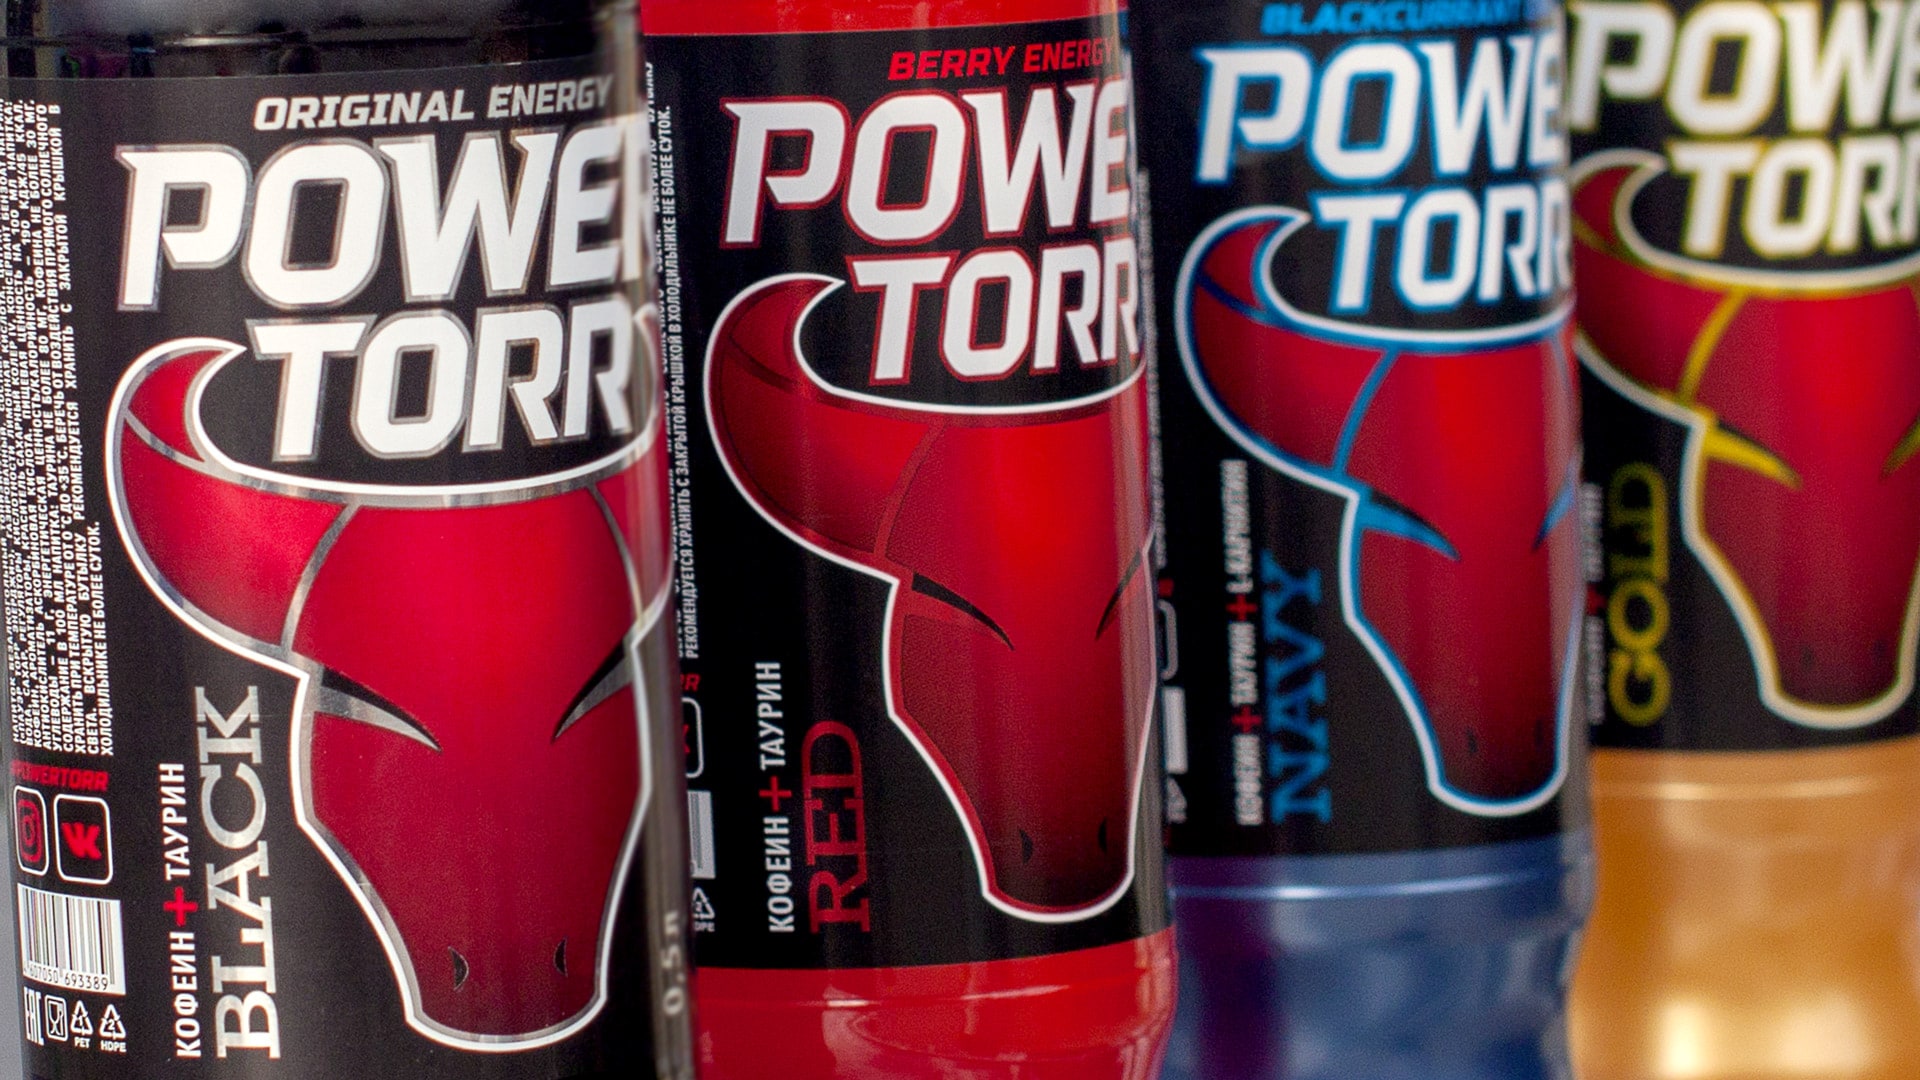 Энергетический напиток Power Torr дизайн этикетки